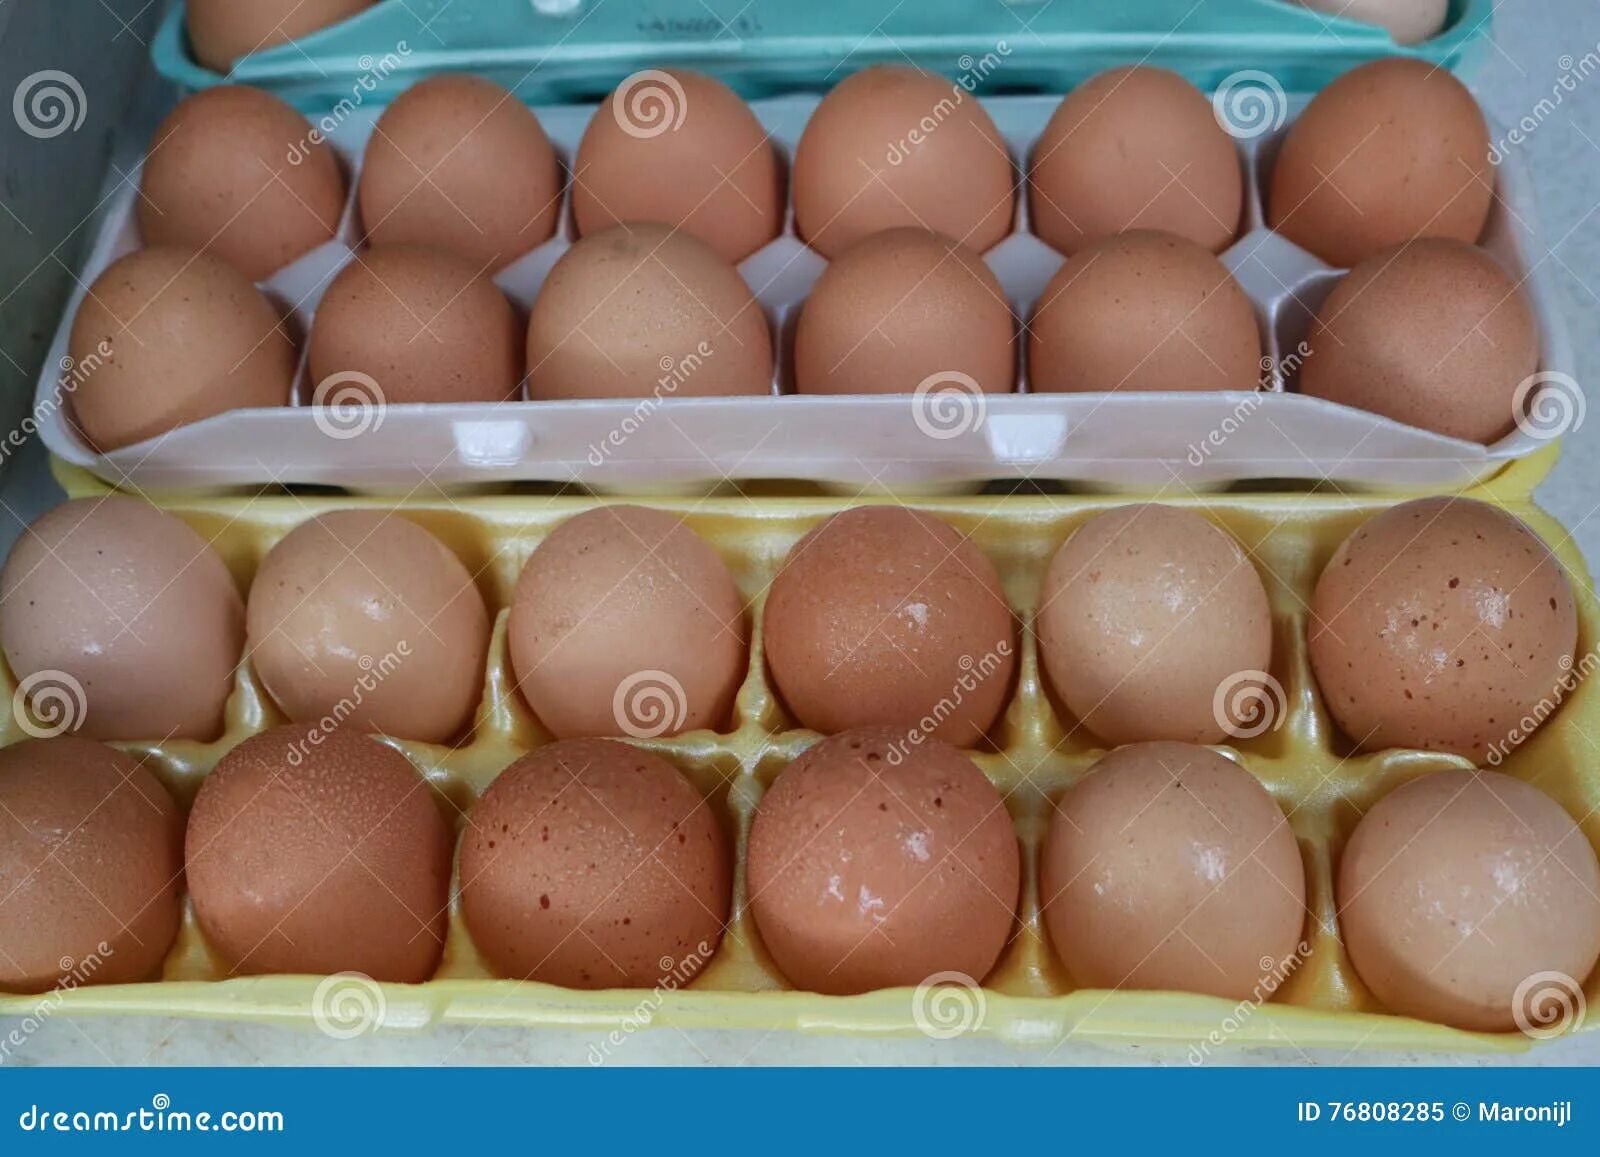 Мужские яйца цена сколько. Стоимость человеческого яйца.